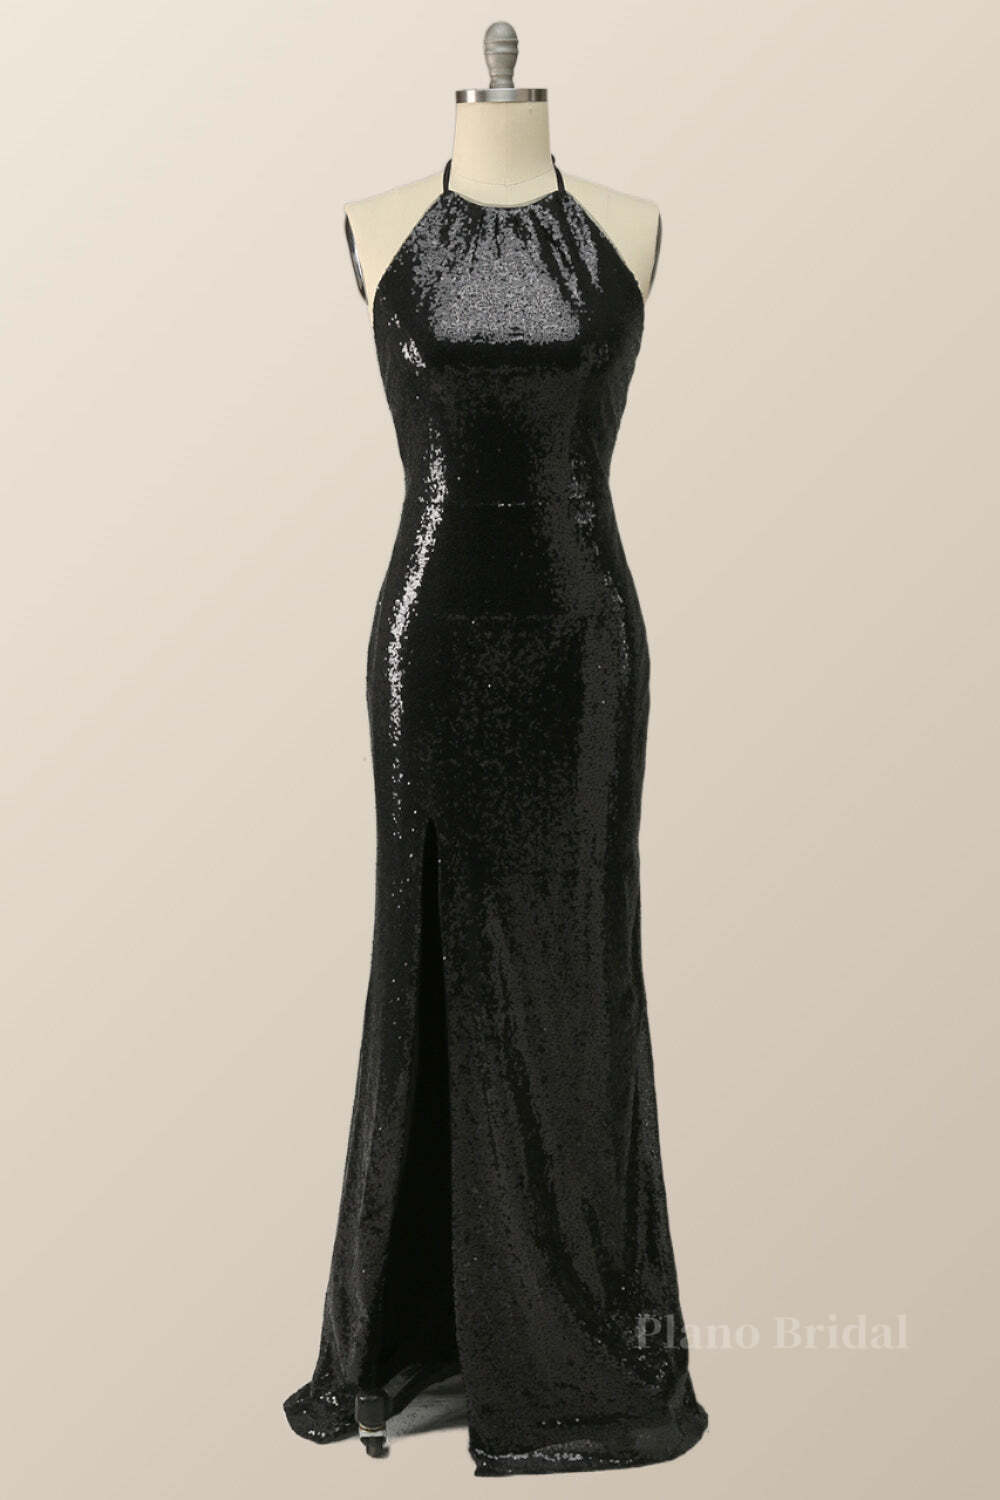 Halter Black Sequin Mermaid Long Formal Dress